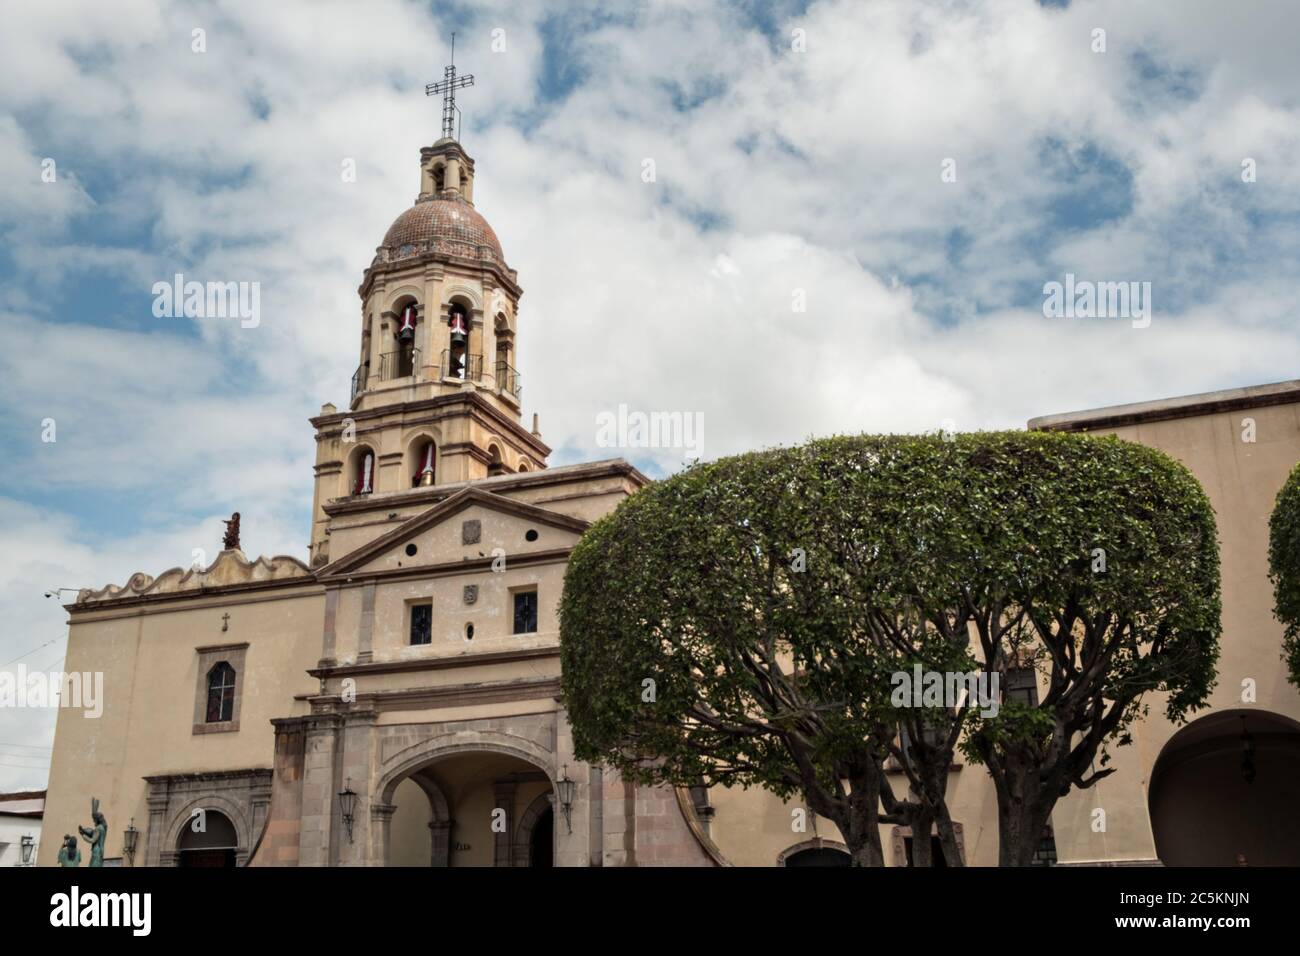 Convento de la cruz queretaro hi-res stock photography and images - Alamy